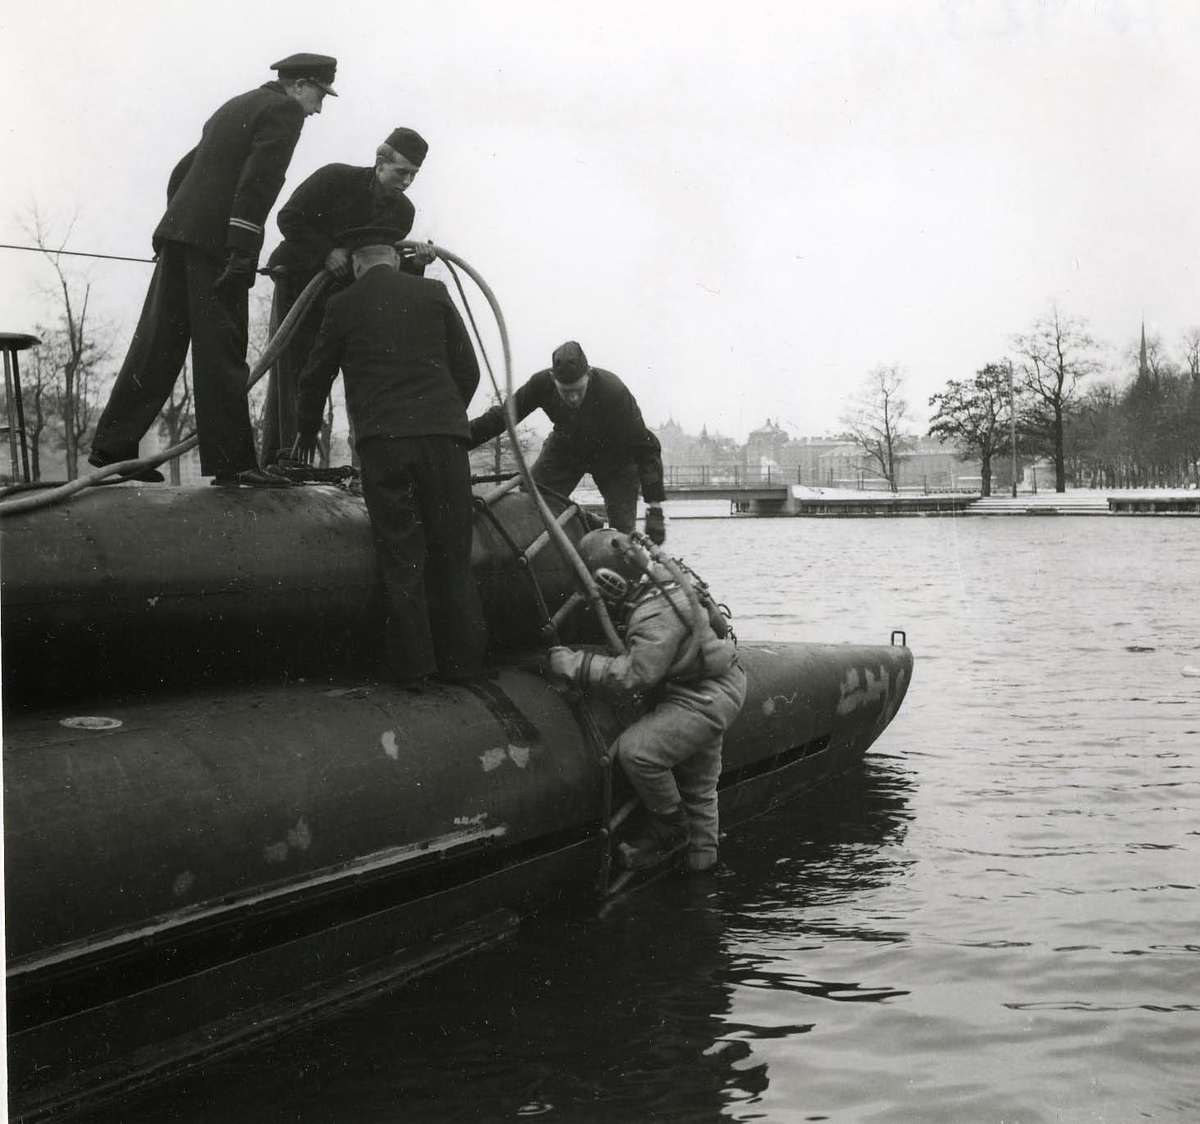 Dykarbete på ubåten Sjöormen vid Skeppsholmen 1949.
Tungdykare går ned vid ubåten.